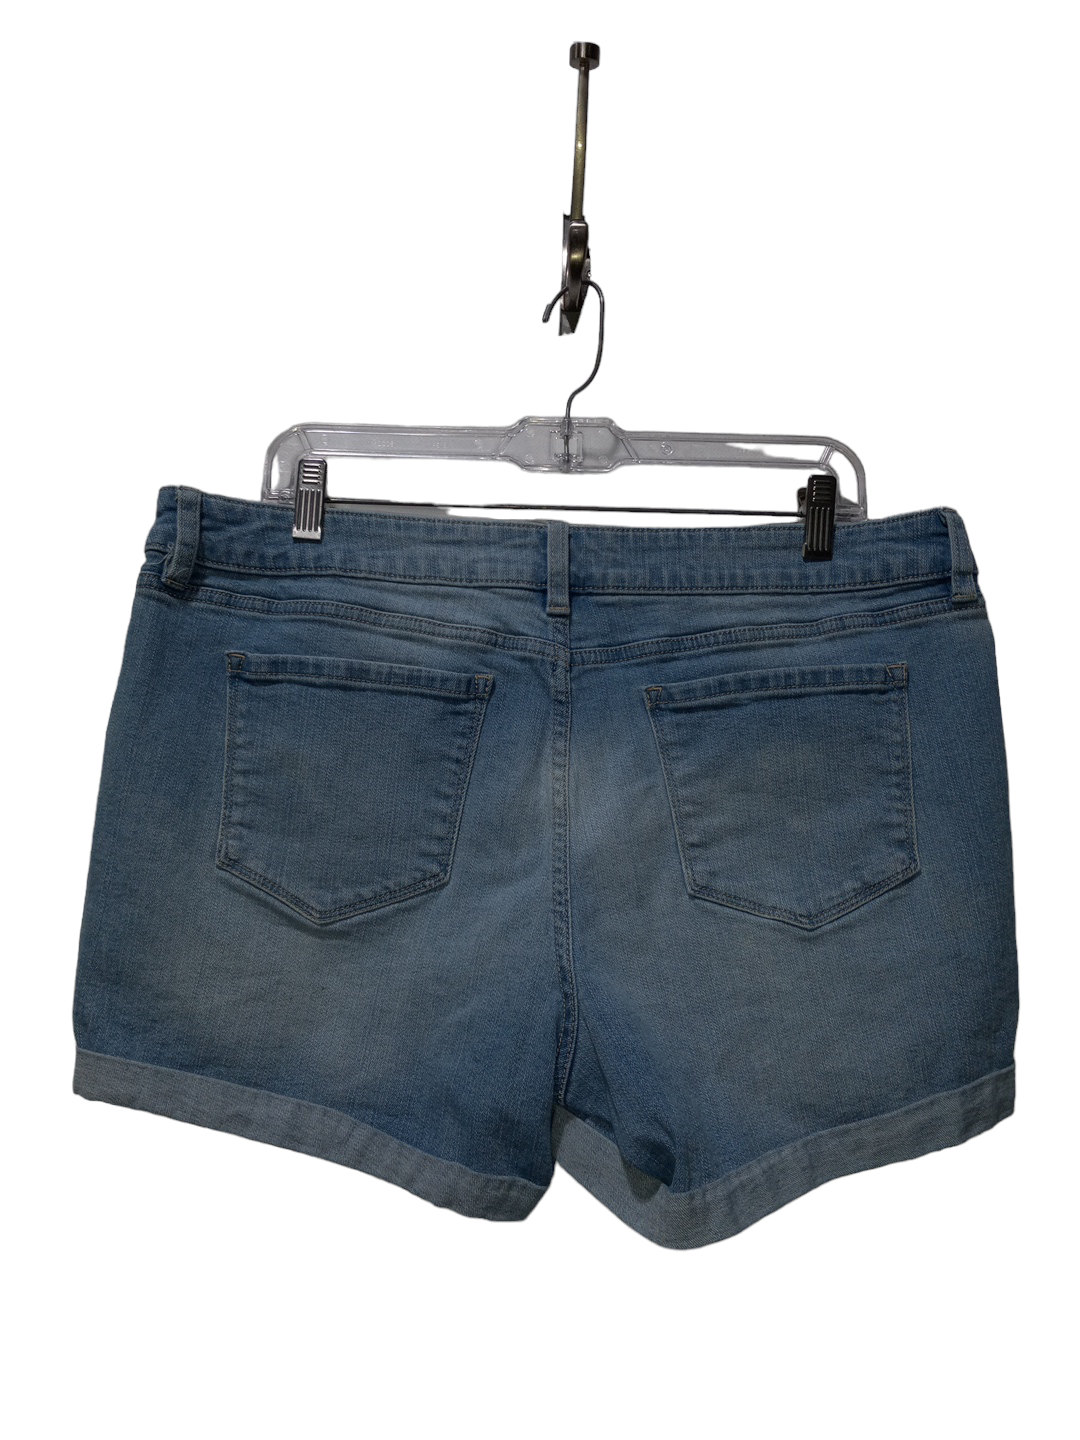 Blue Denim Shorts Ana, Size 14